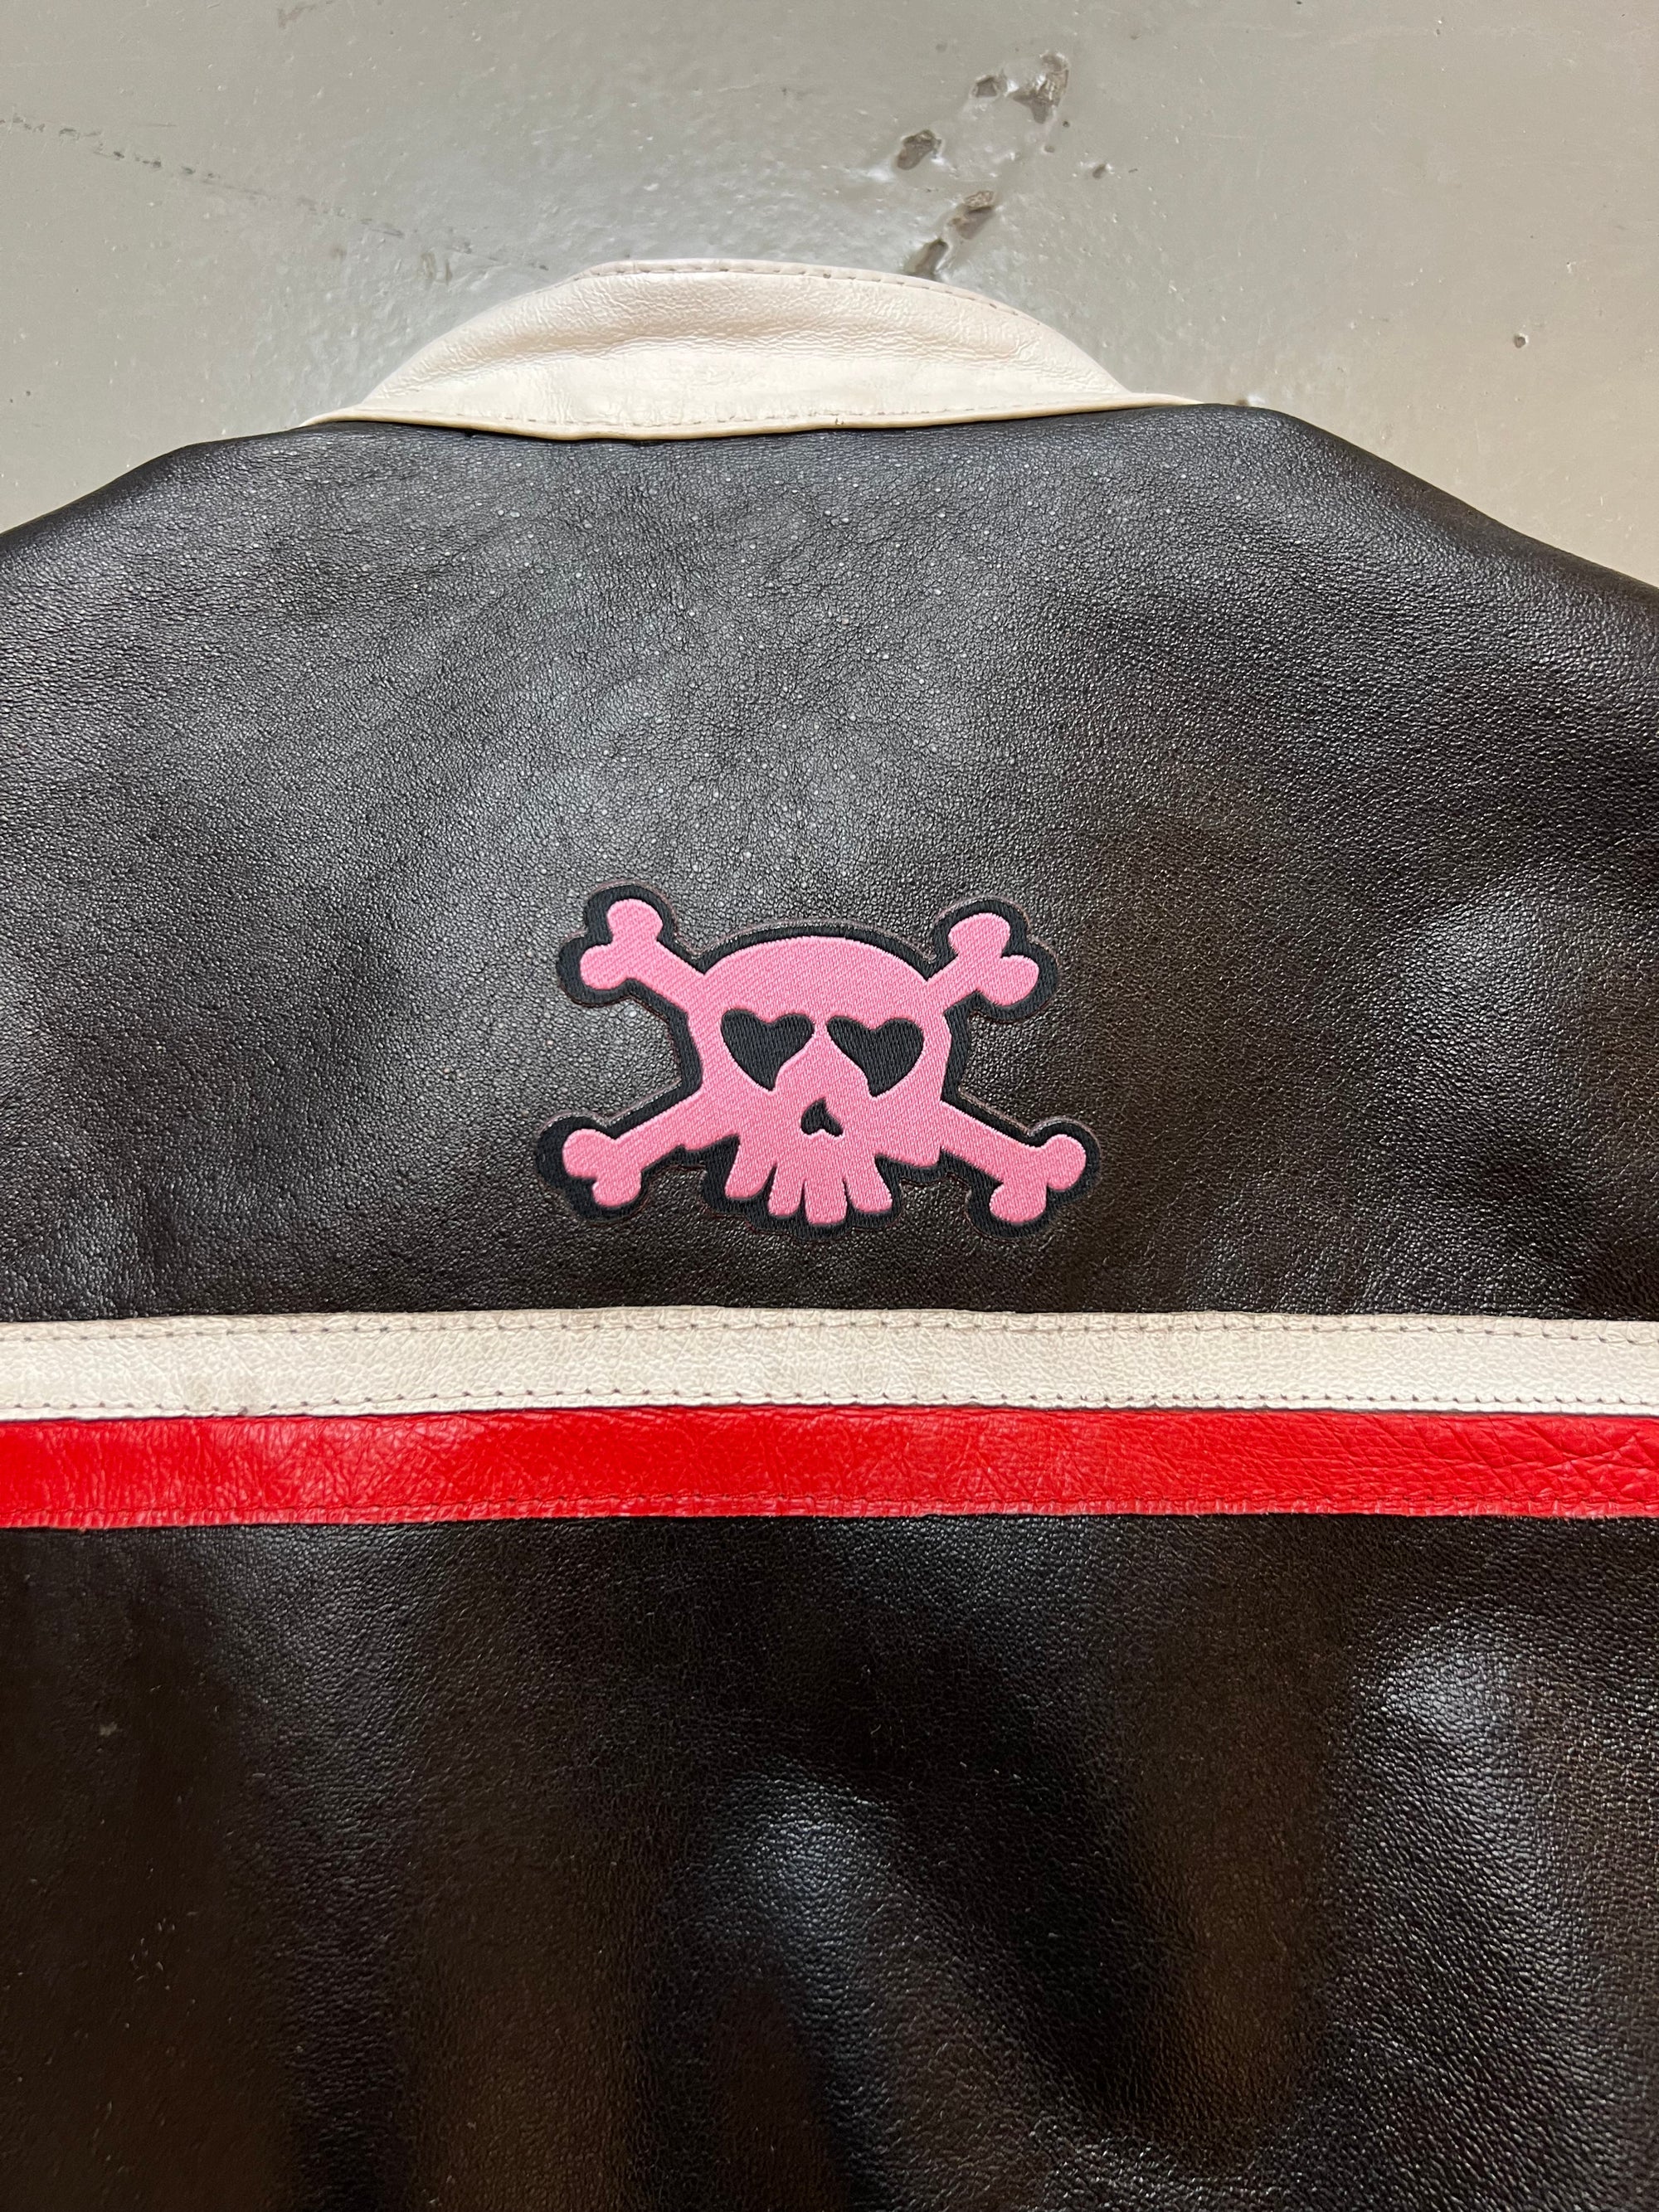 Produkt Bild Vintage Leather Racing Jacket Black s von Detail Patch Hinten